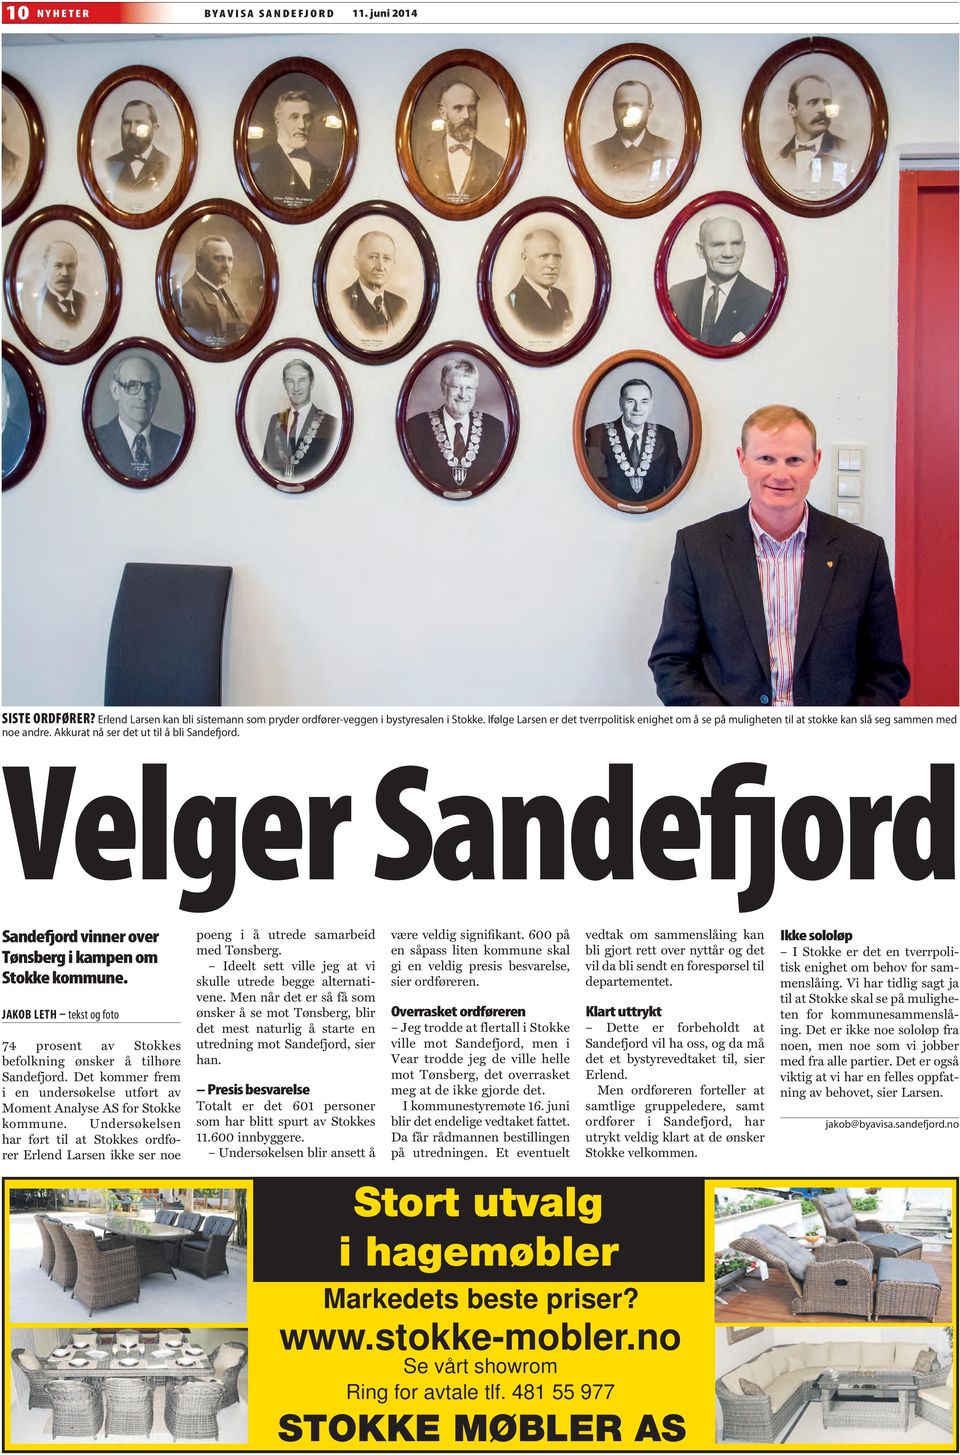 Velger Sandefjord Sandefjord vinner over Tønsberg i kampen om Stokke kommune. JAKOB LETH tekst og foto 74 prosent av Stokkes befolkning ønsker å tilhøre Sandefjord.